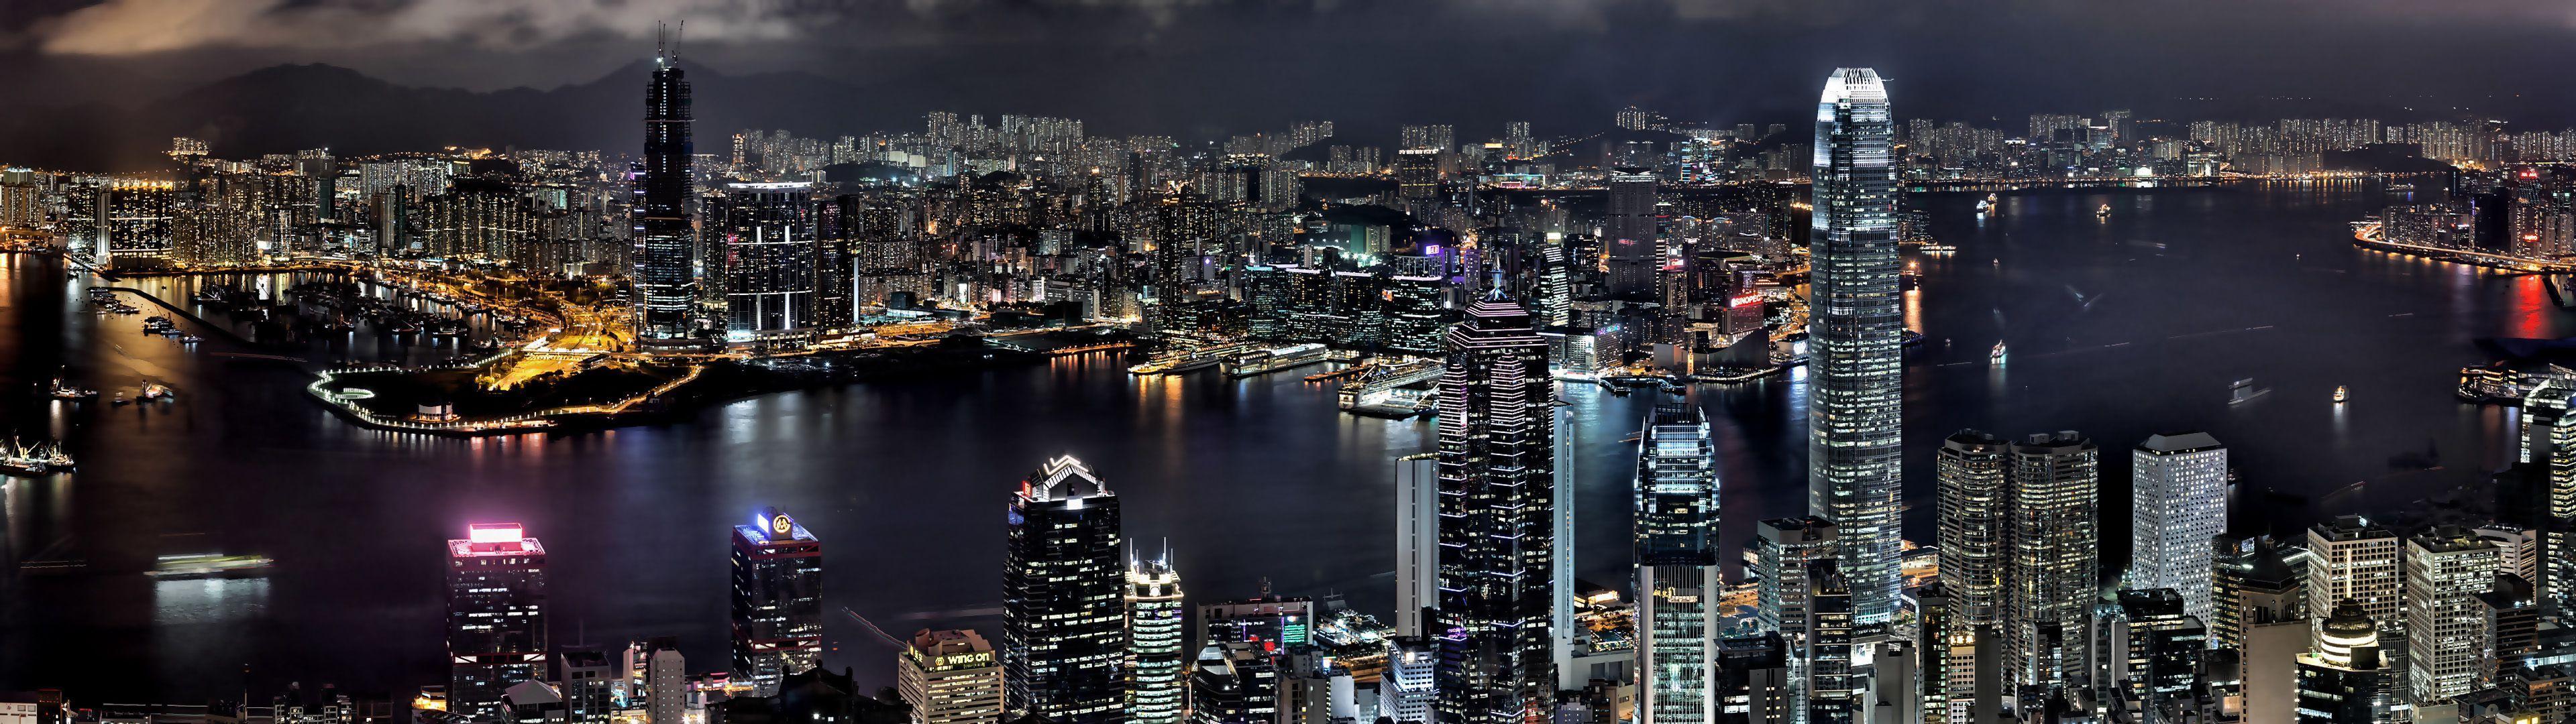 Cityscapes night buildings Hong Kong wallpaperx1080